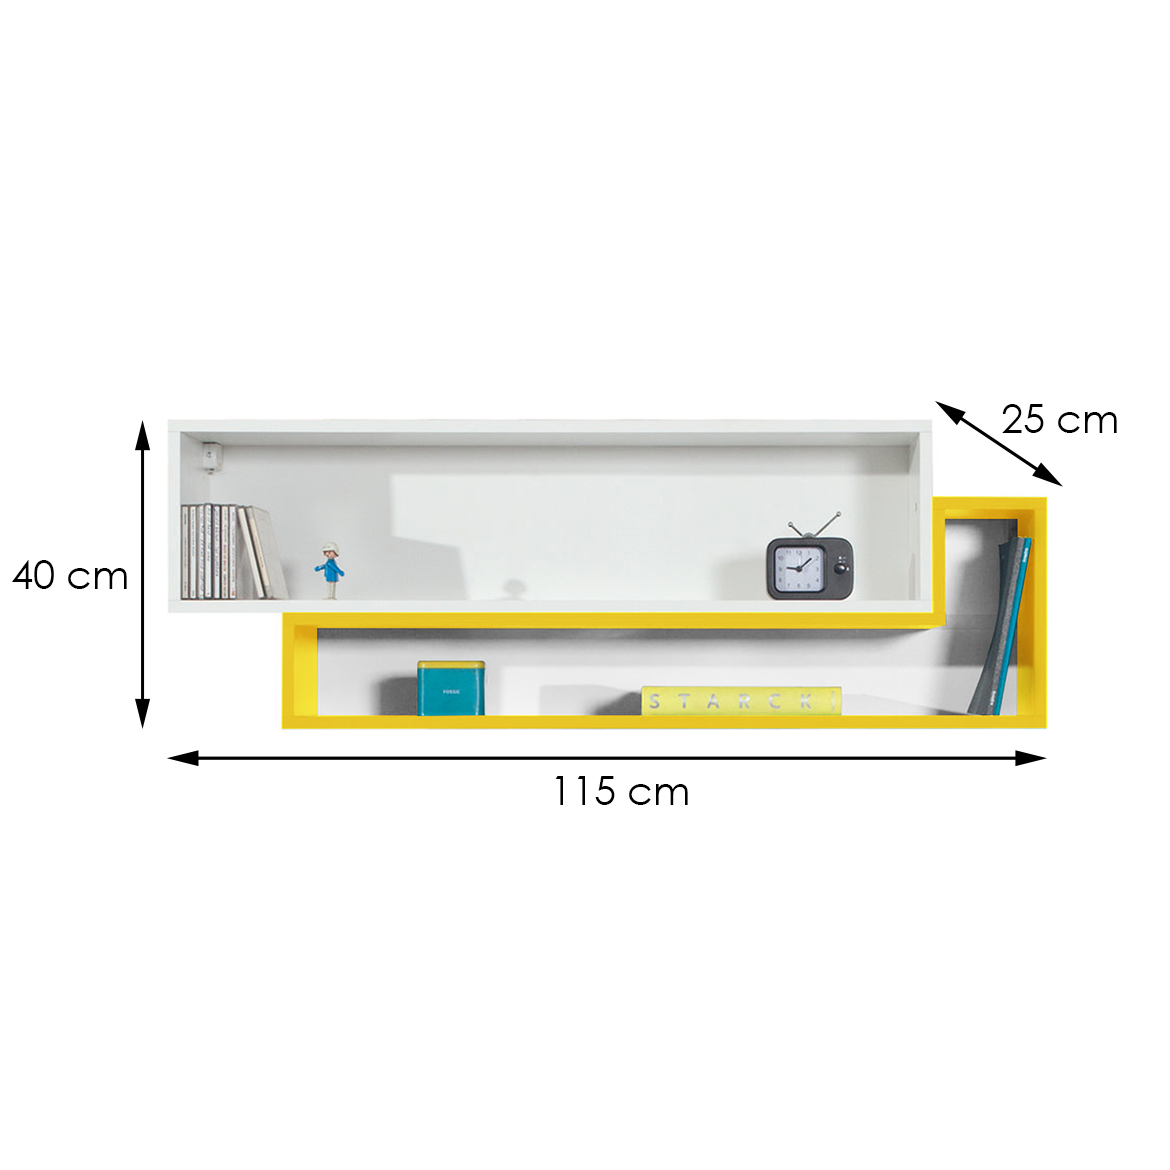 Závěsná skříňka Mobi 115 cm, bílá / žlutá,3